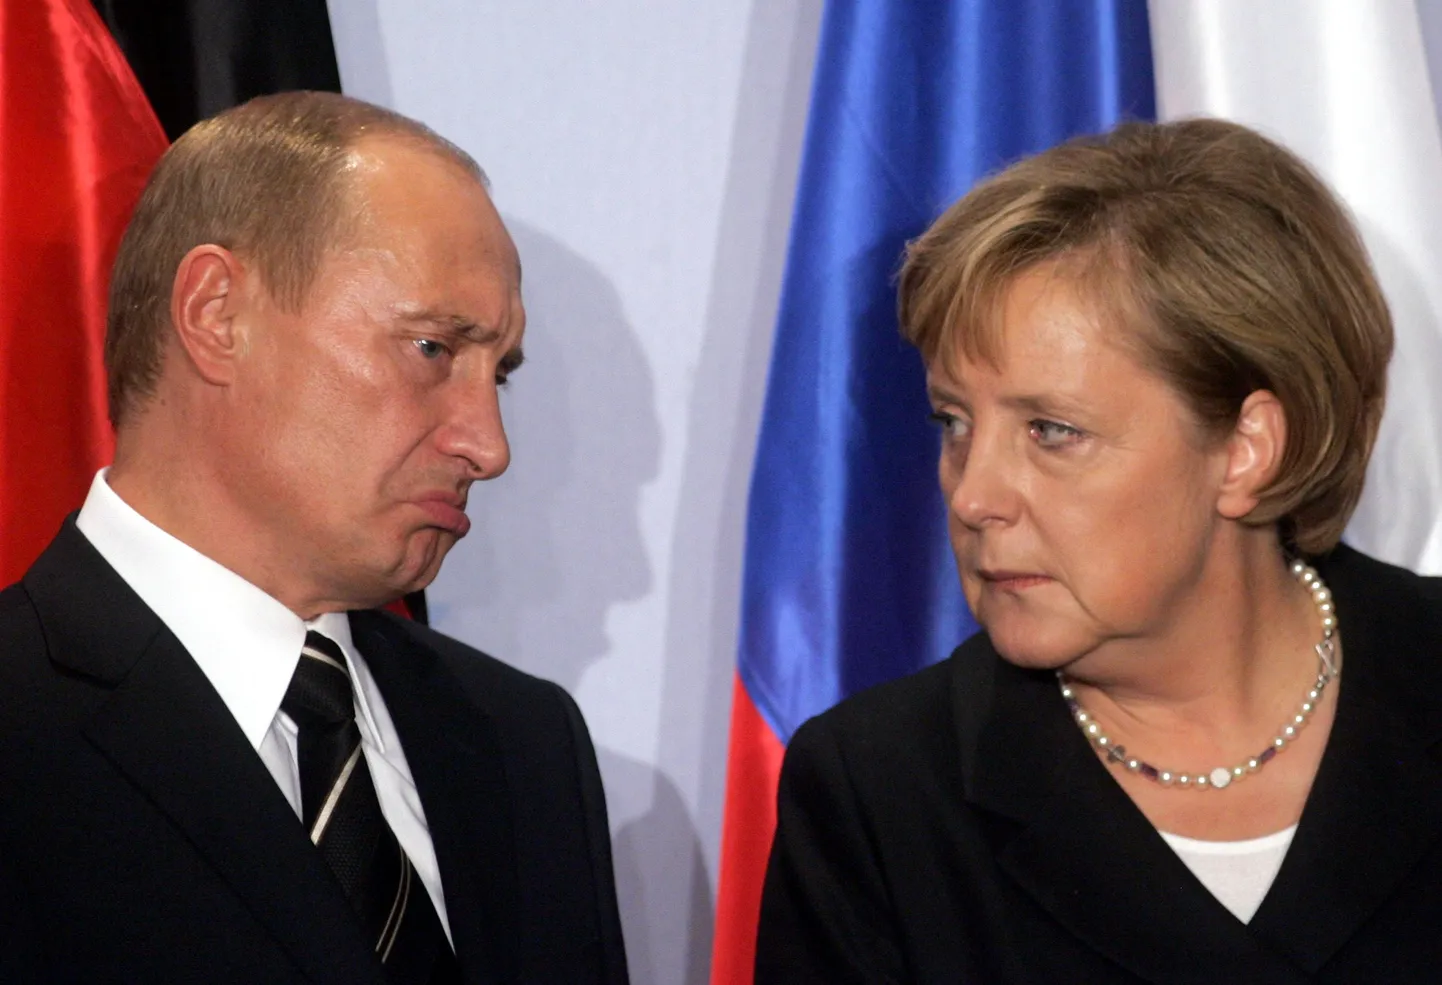 Владимир Путин и Ангела Меркель. Может быть им стоило бы больше доверять друг другу.